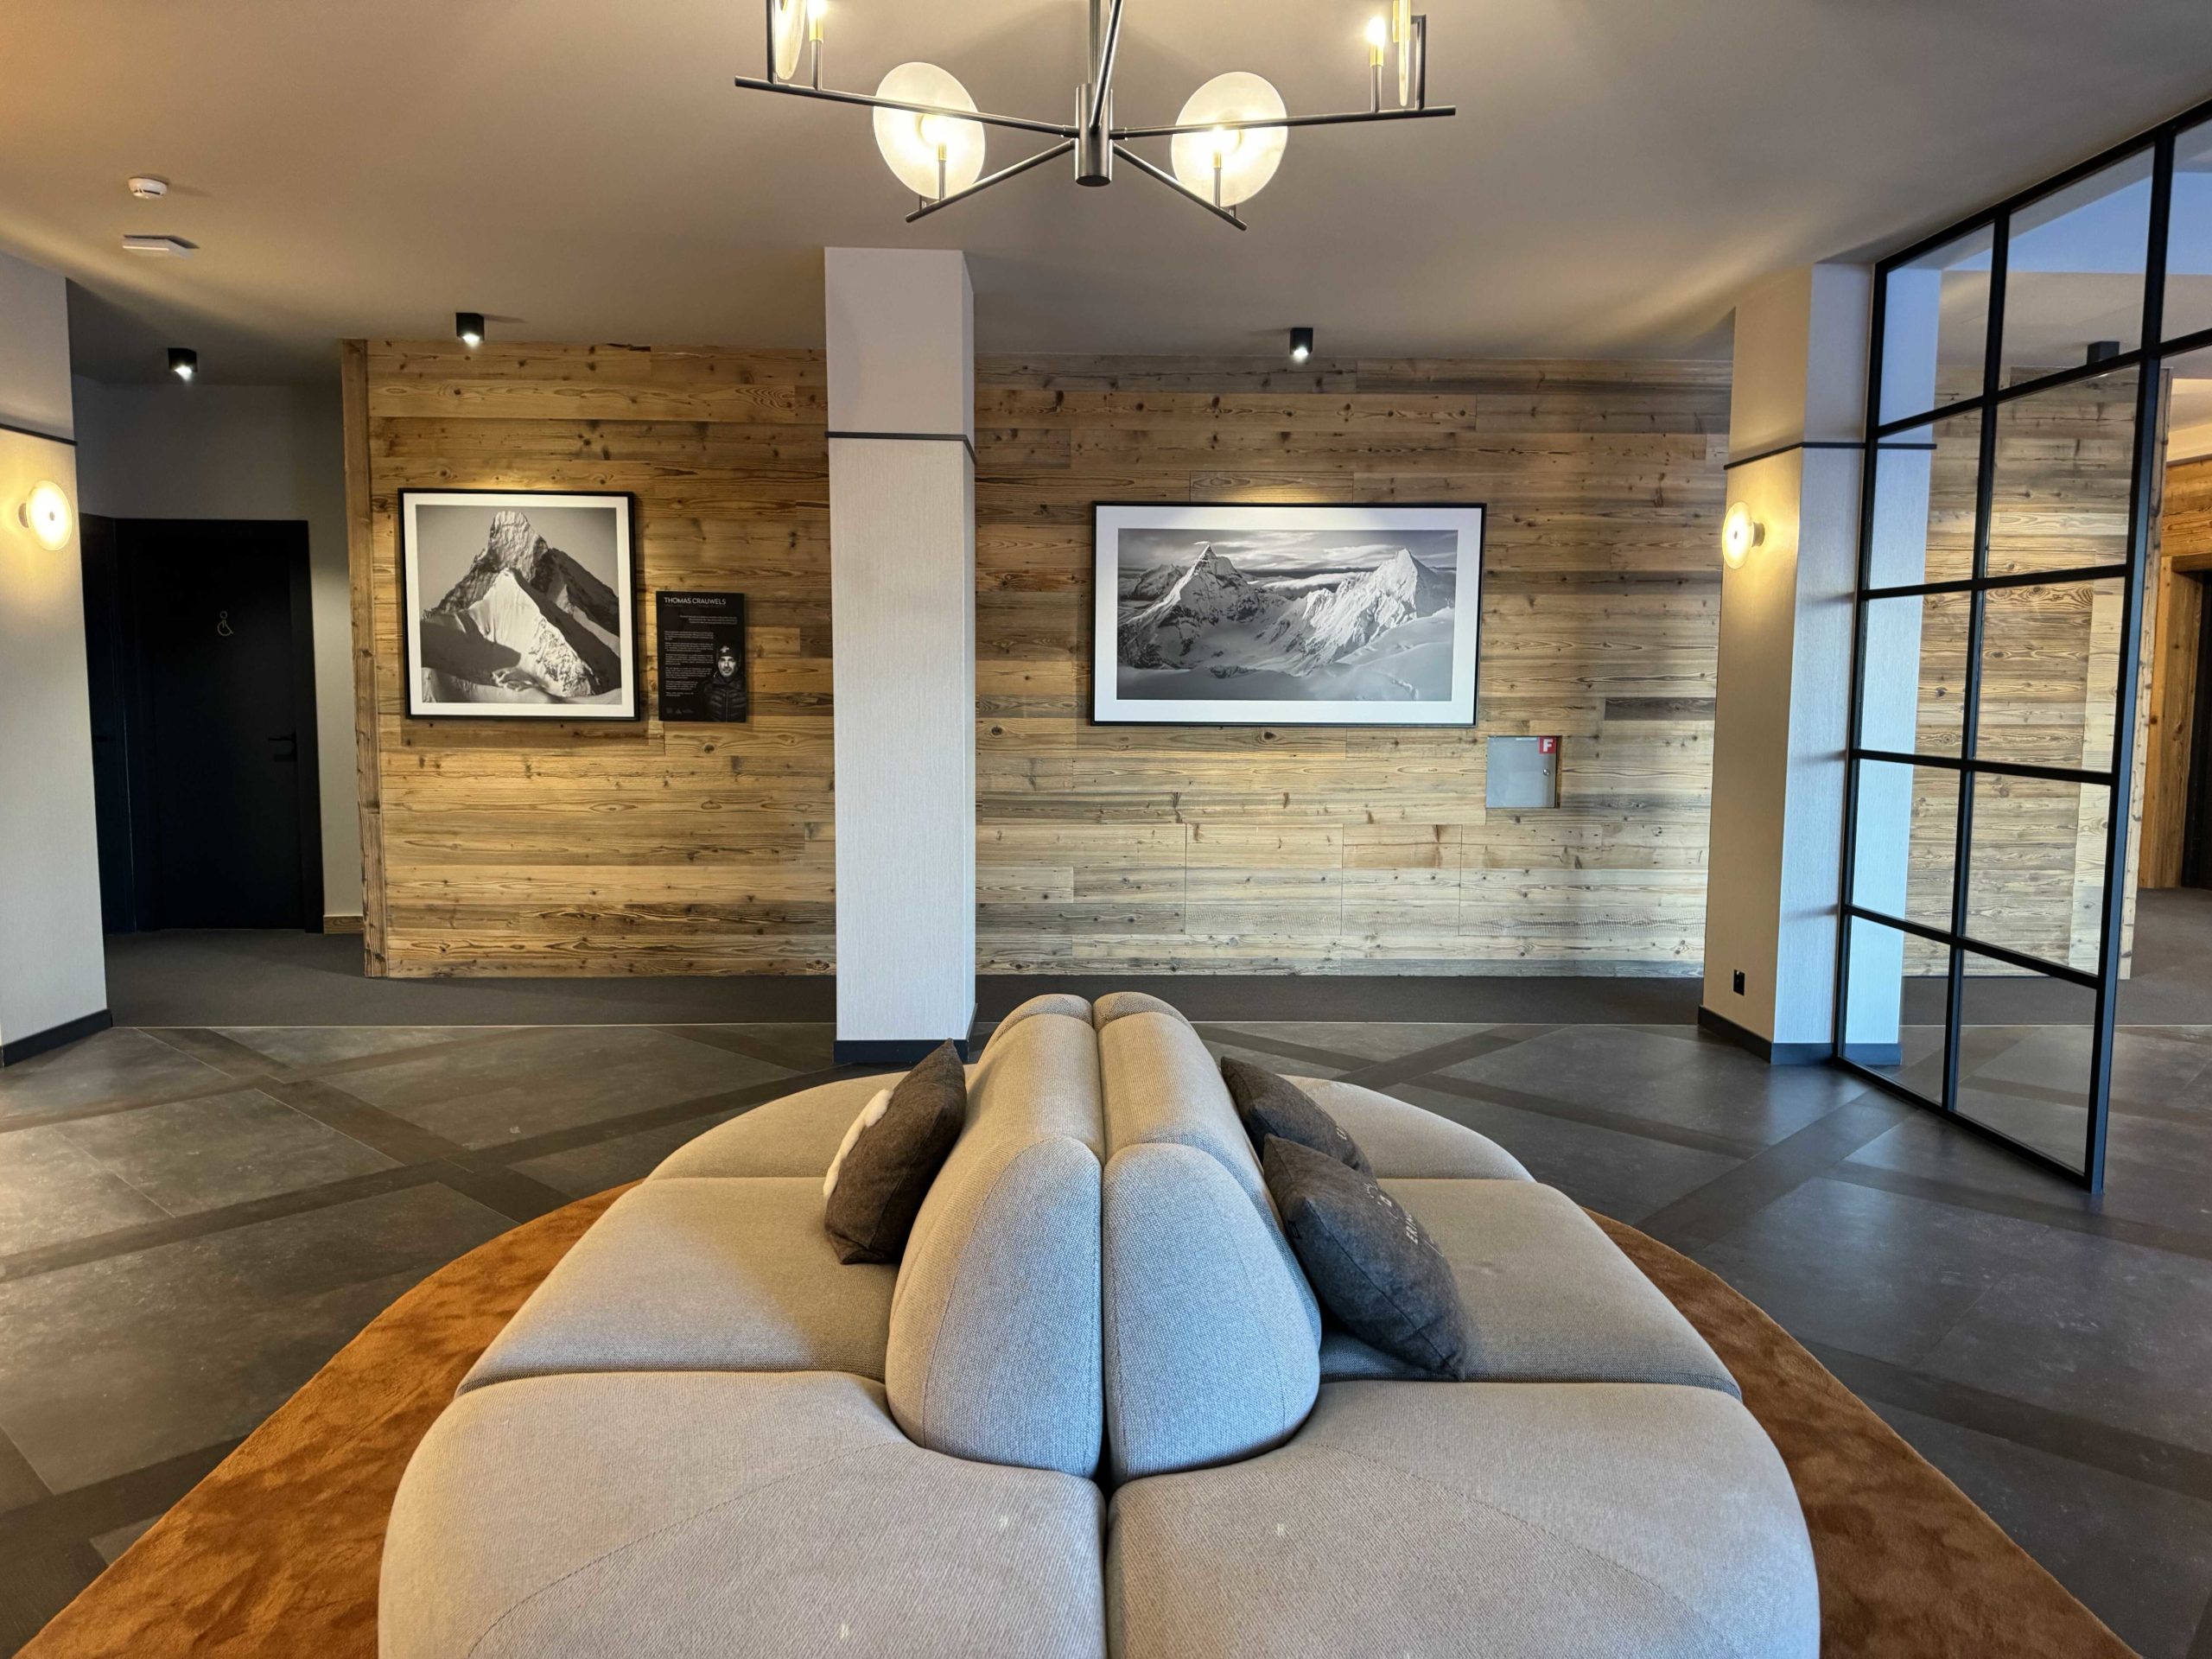 Fotografie des Hotels Eringer mit Sofa im Vordergrund und im Hintergrund des Raumes hängen an der Wand zwei Bergbilder von Thomas Crauwels 